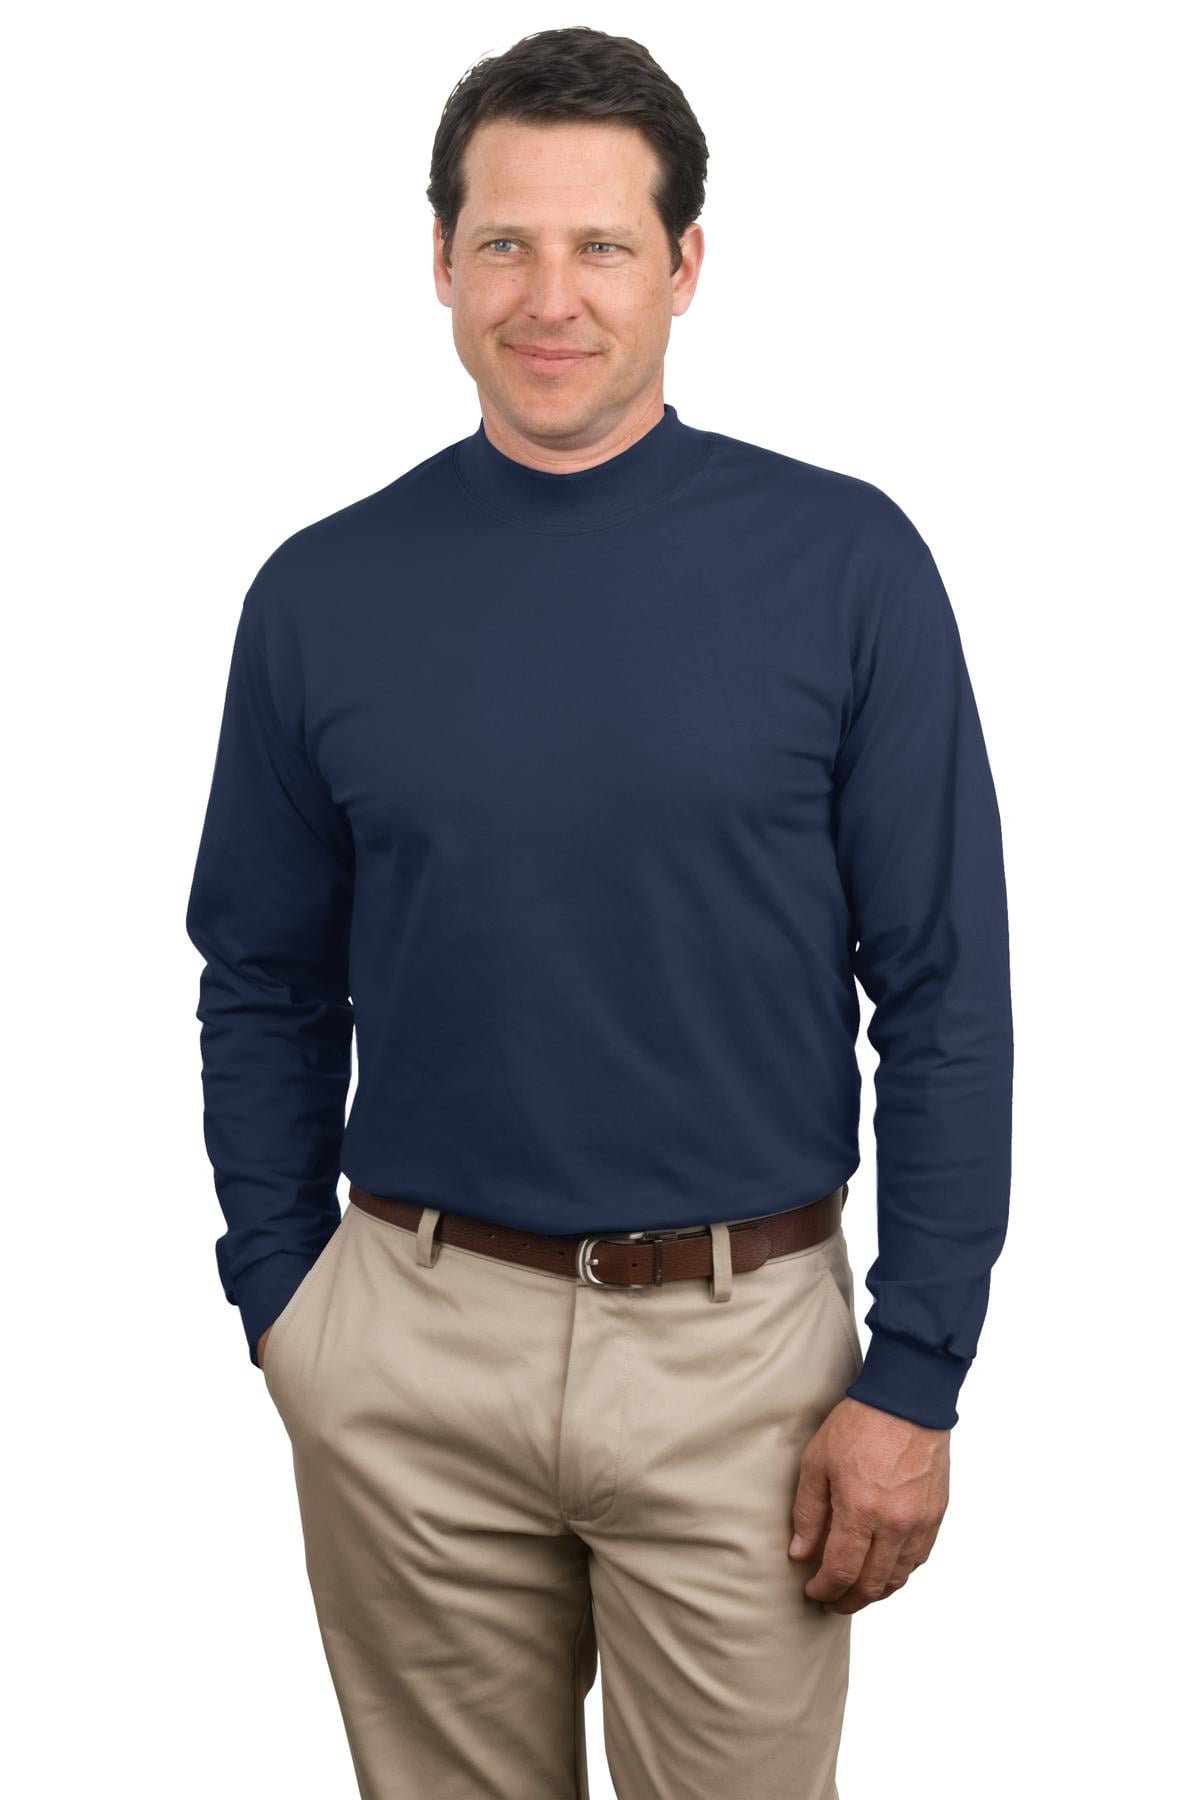 mens dress mock turtleneck shirt